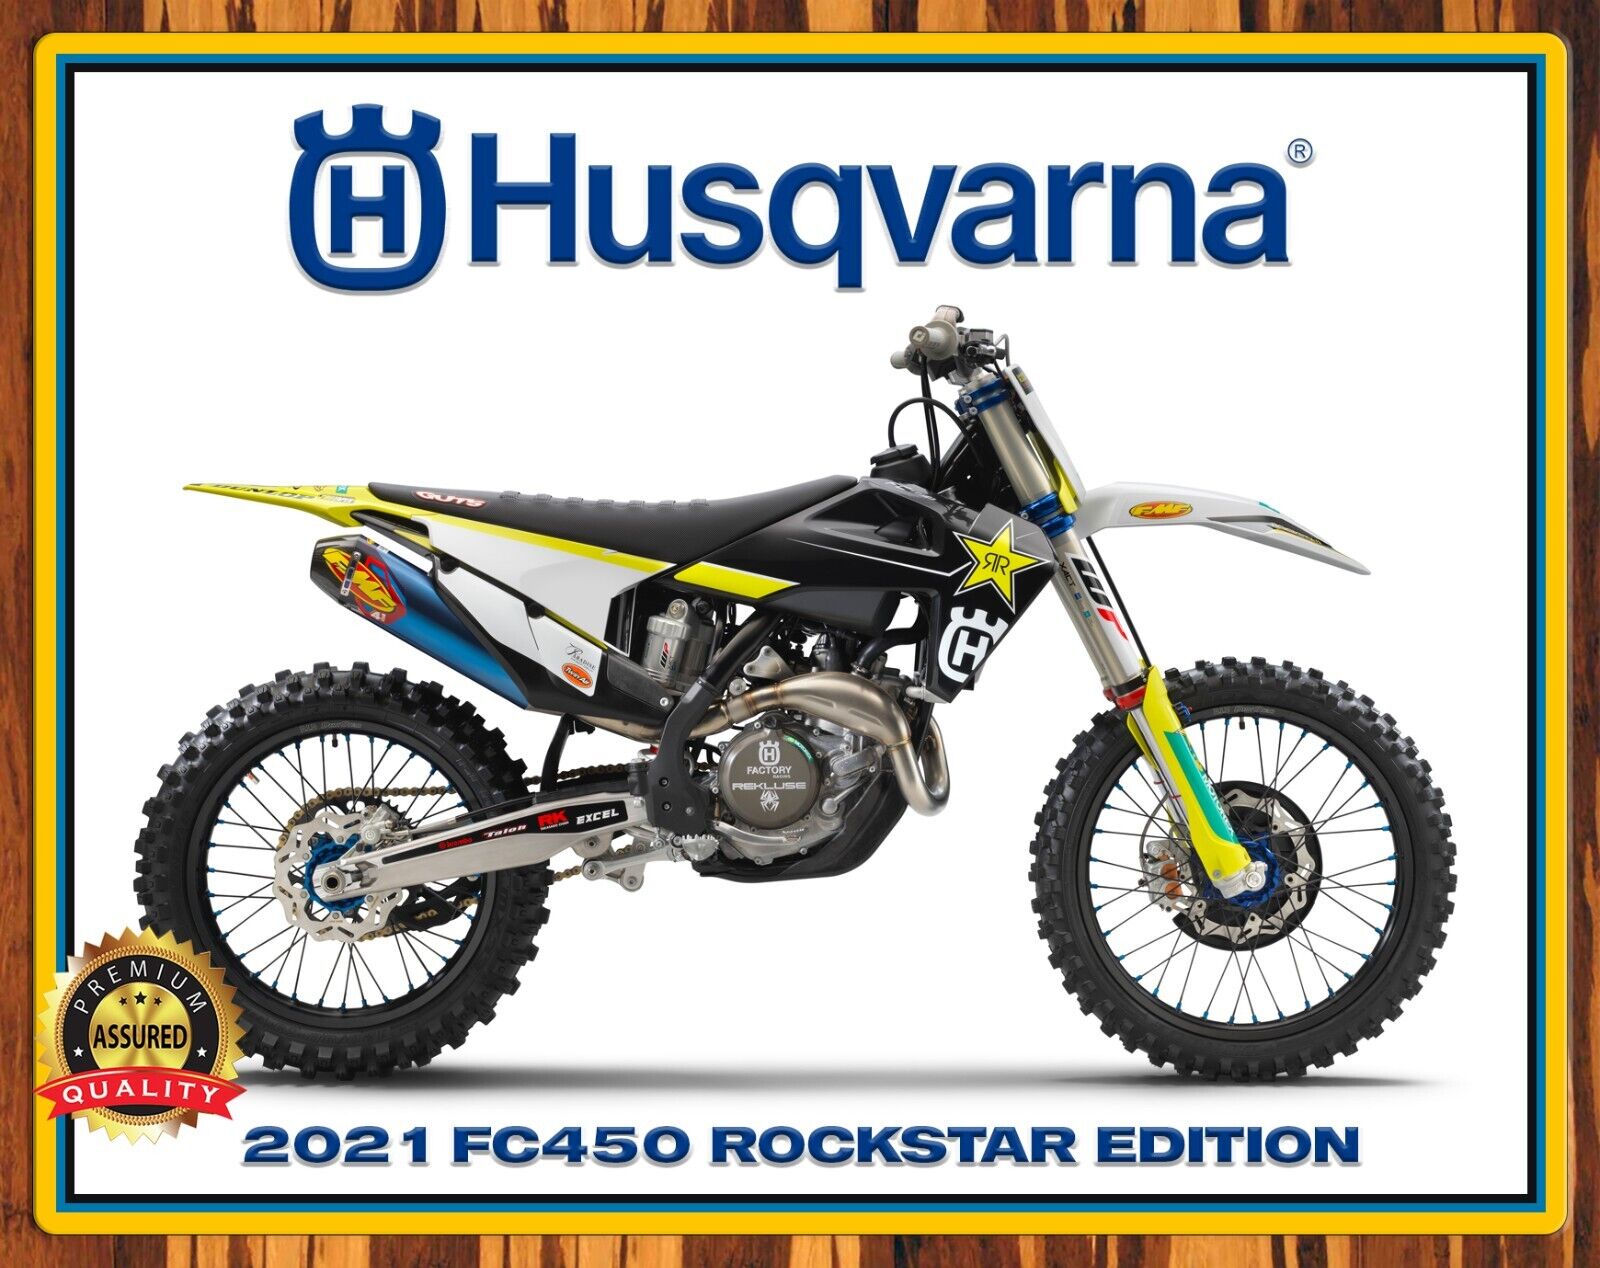 Husqvarna - FC450 Rockstar Edition - Motocross - 2021 - Metal Sign 11 x 14